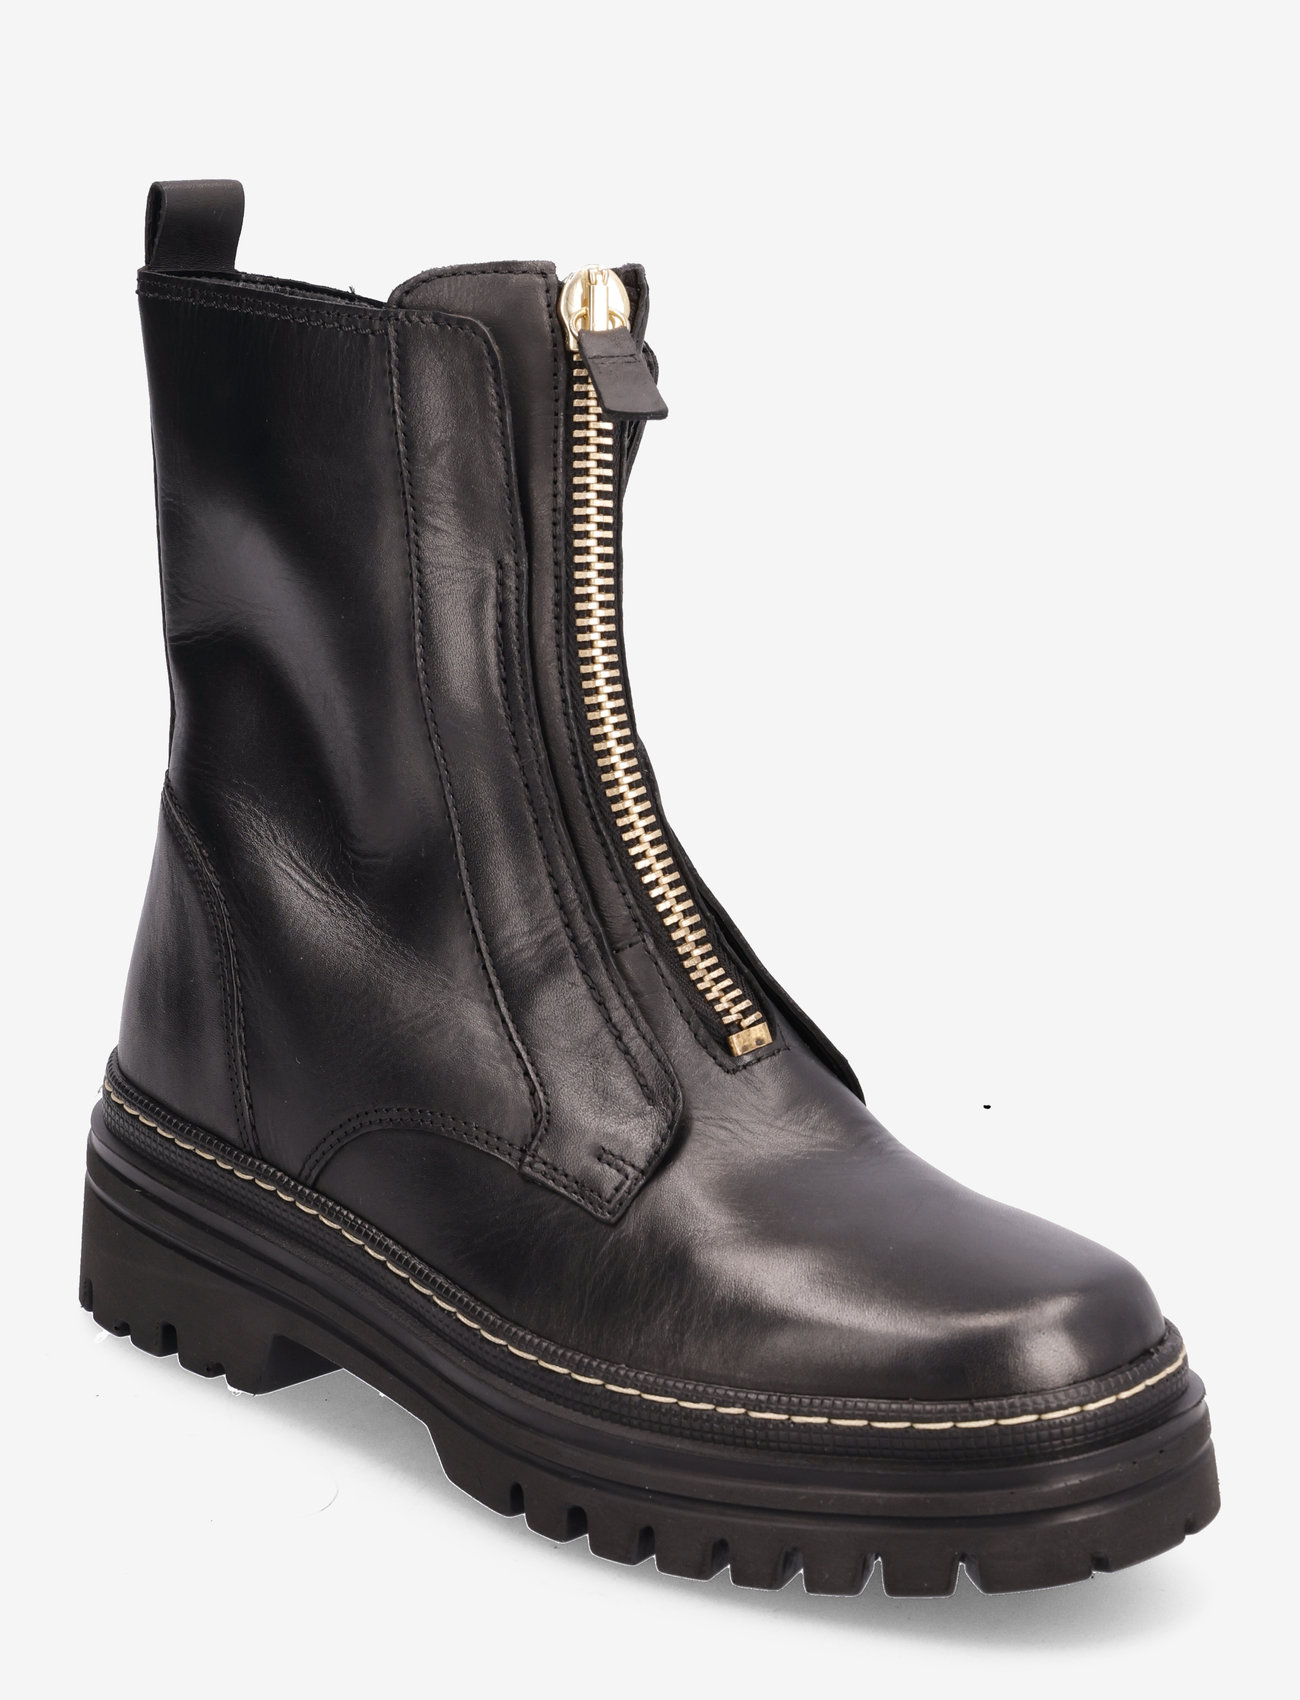 Gabor - Ankle boot - tasapohjaiset nilkkurit - black - 0